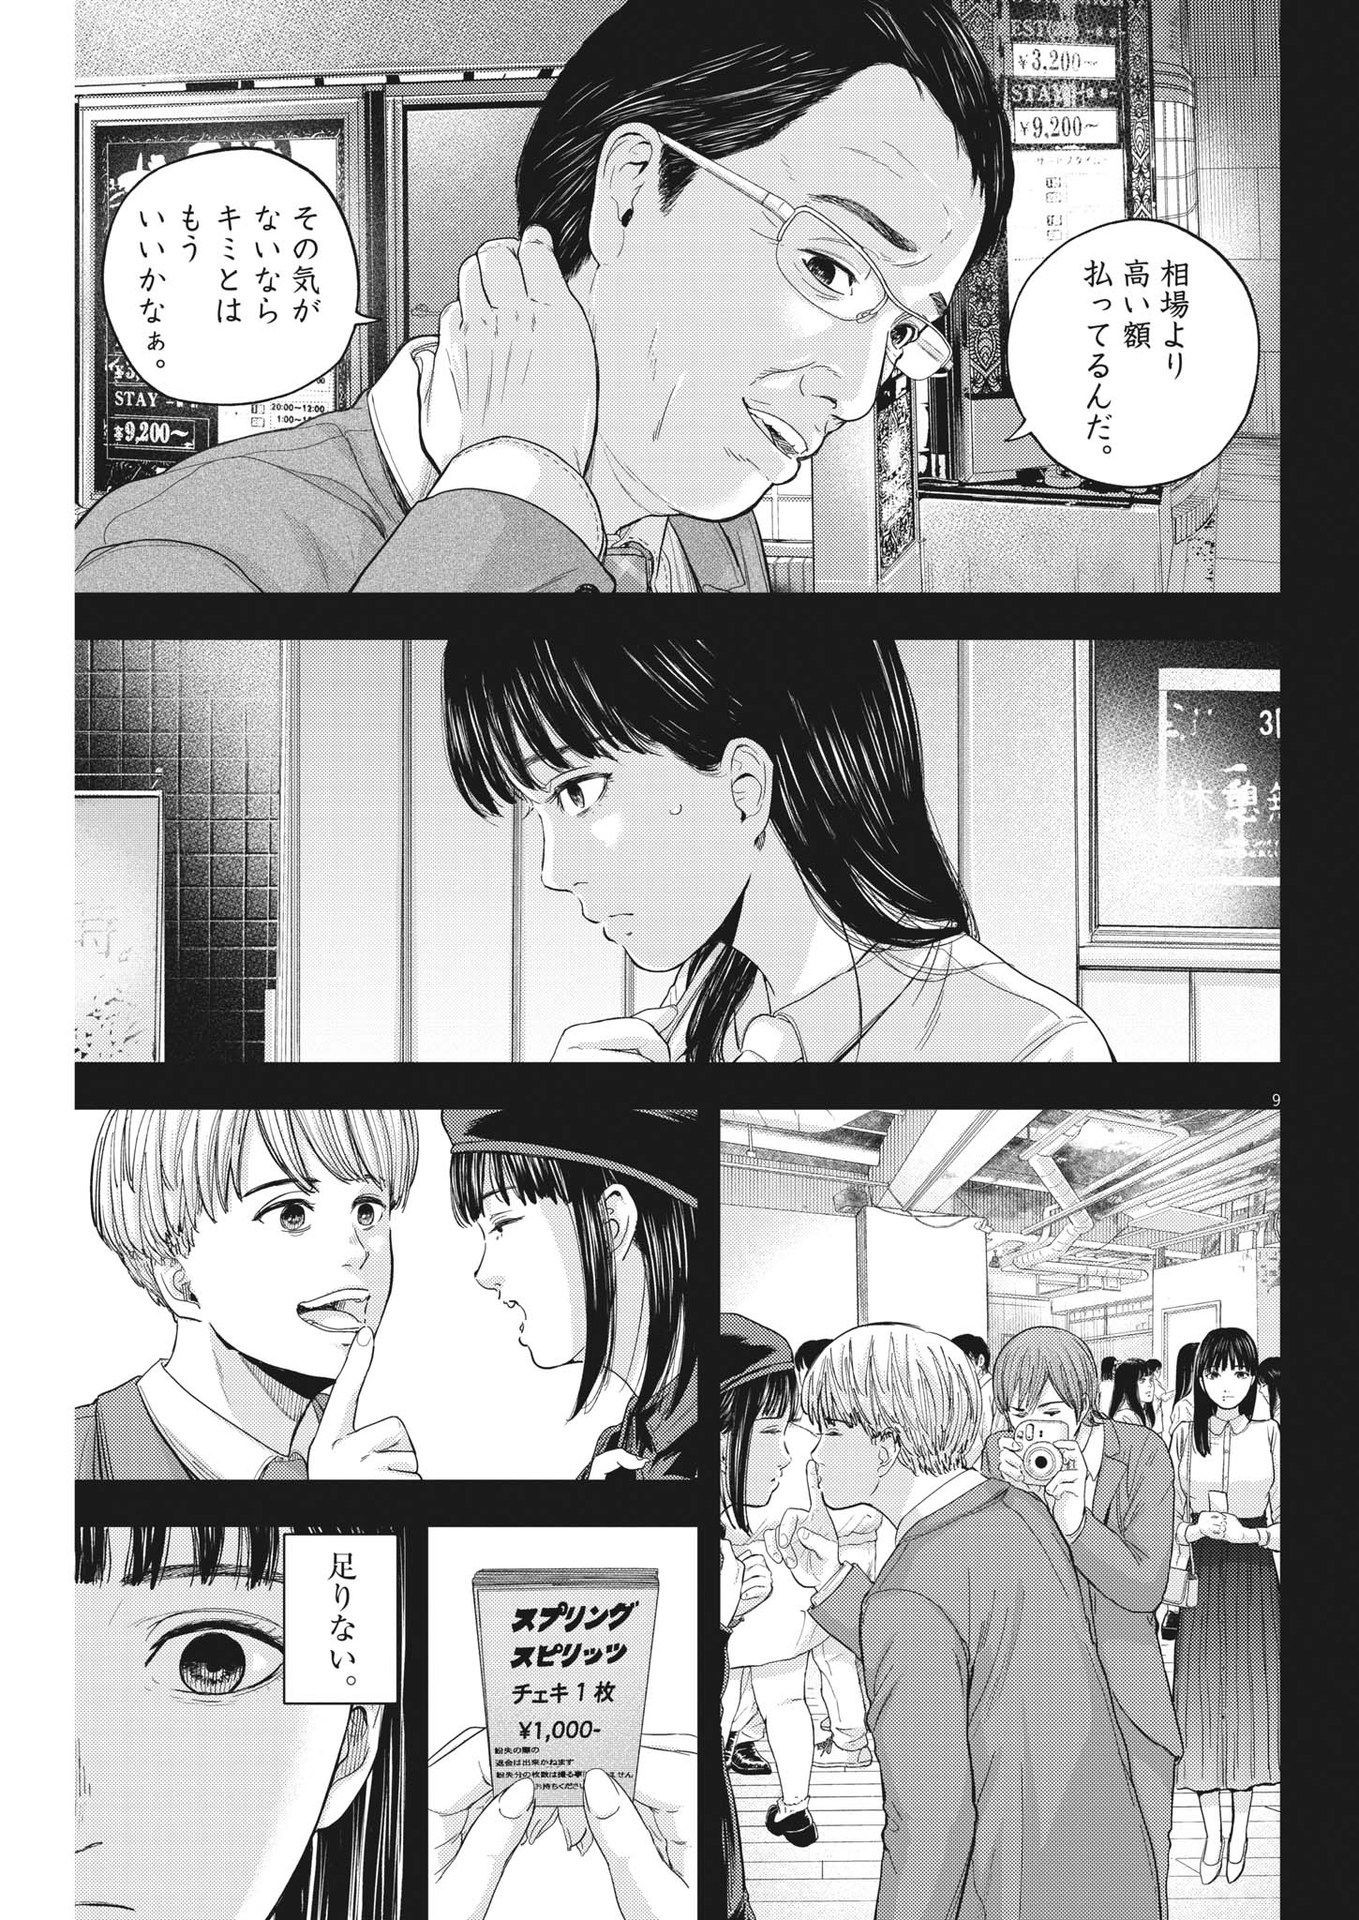 Yumenashi-sensei no Shinroshidou - Chapter 11 - Page 9